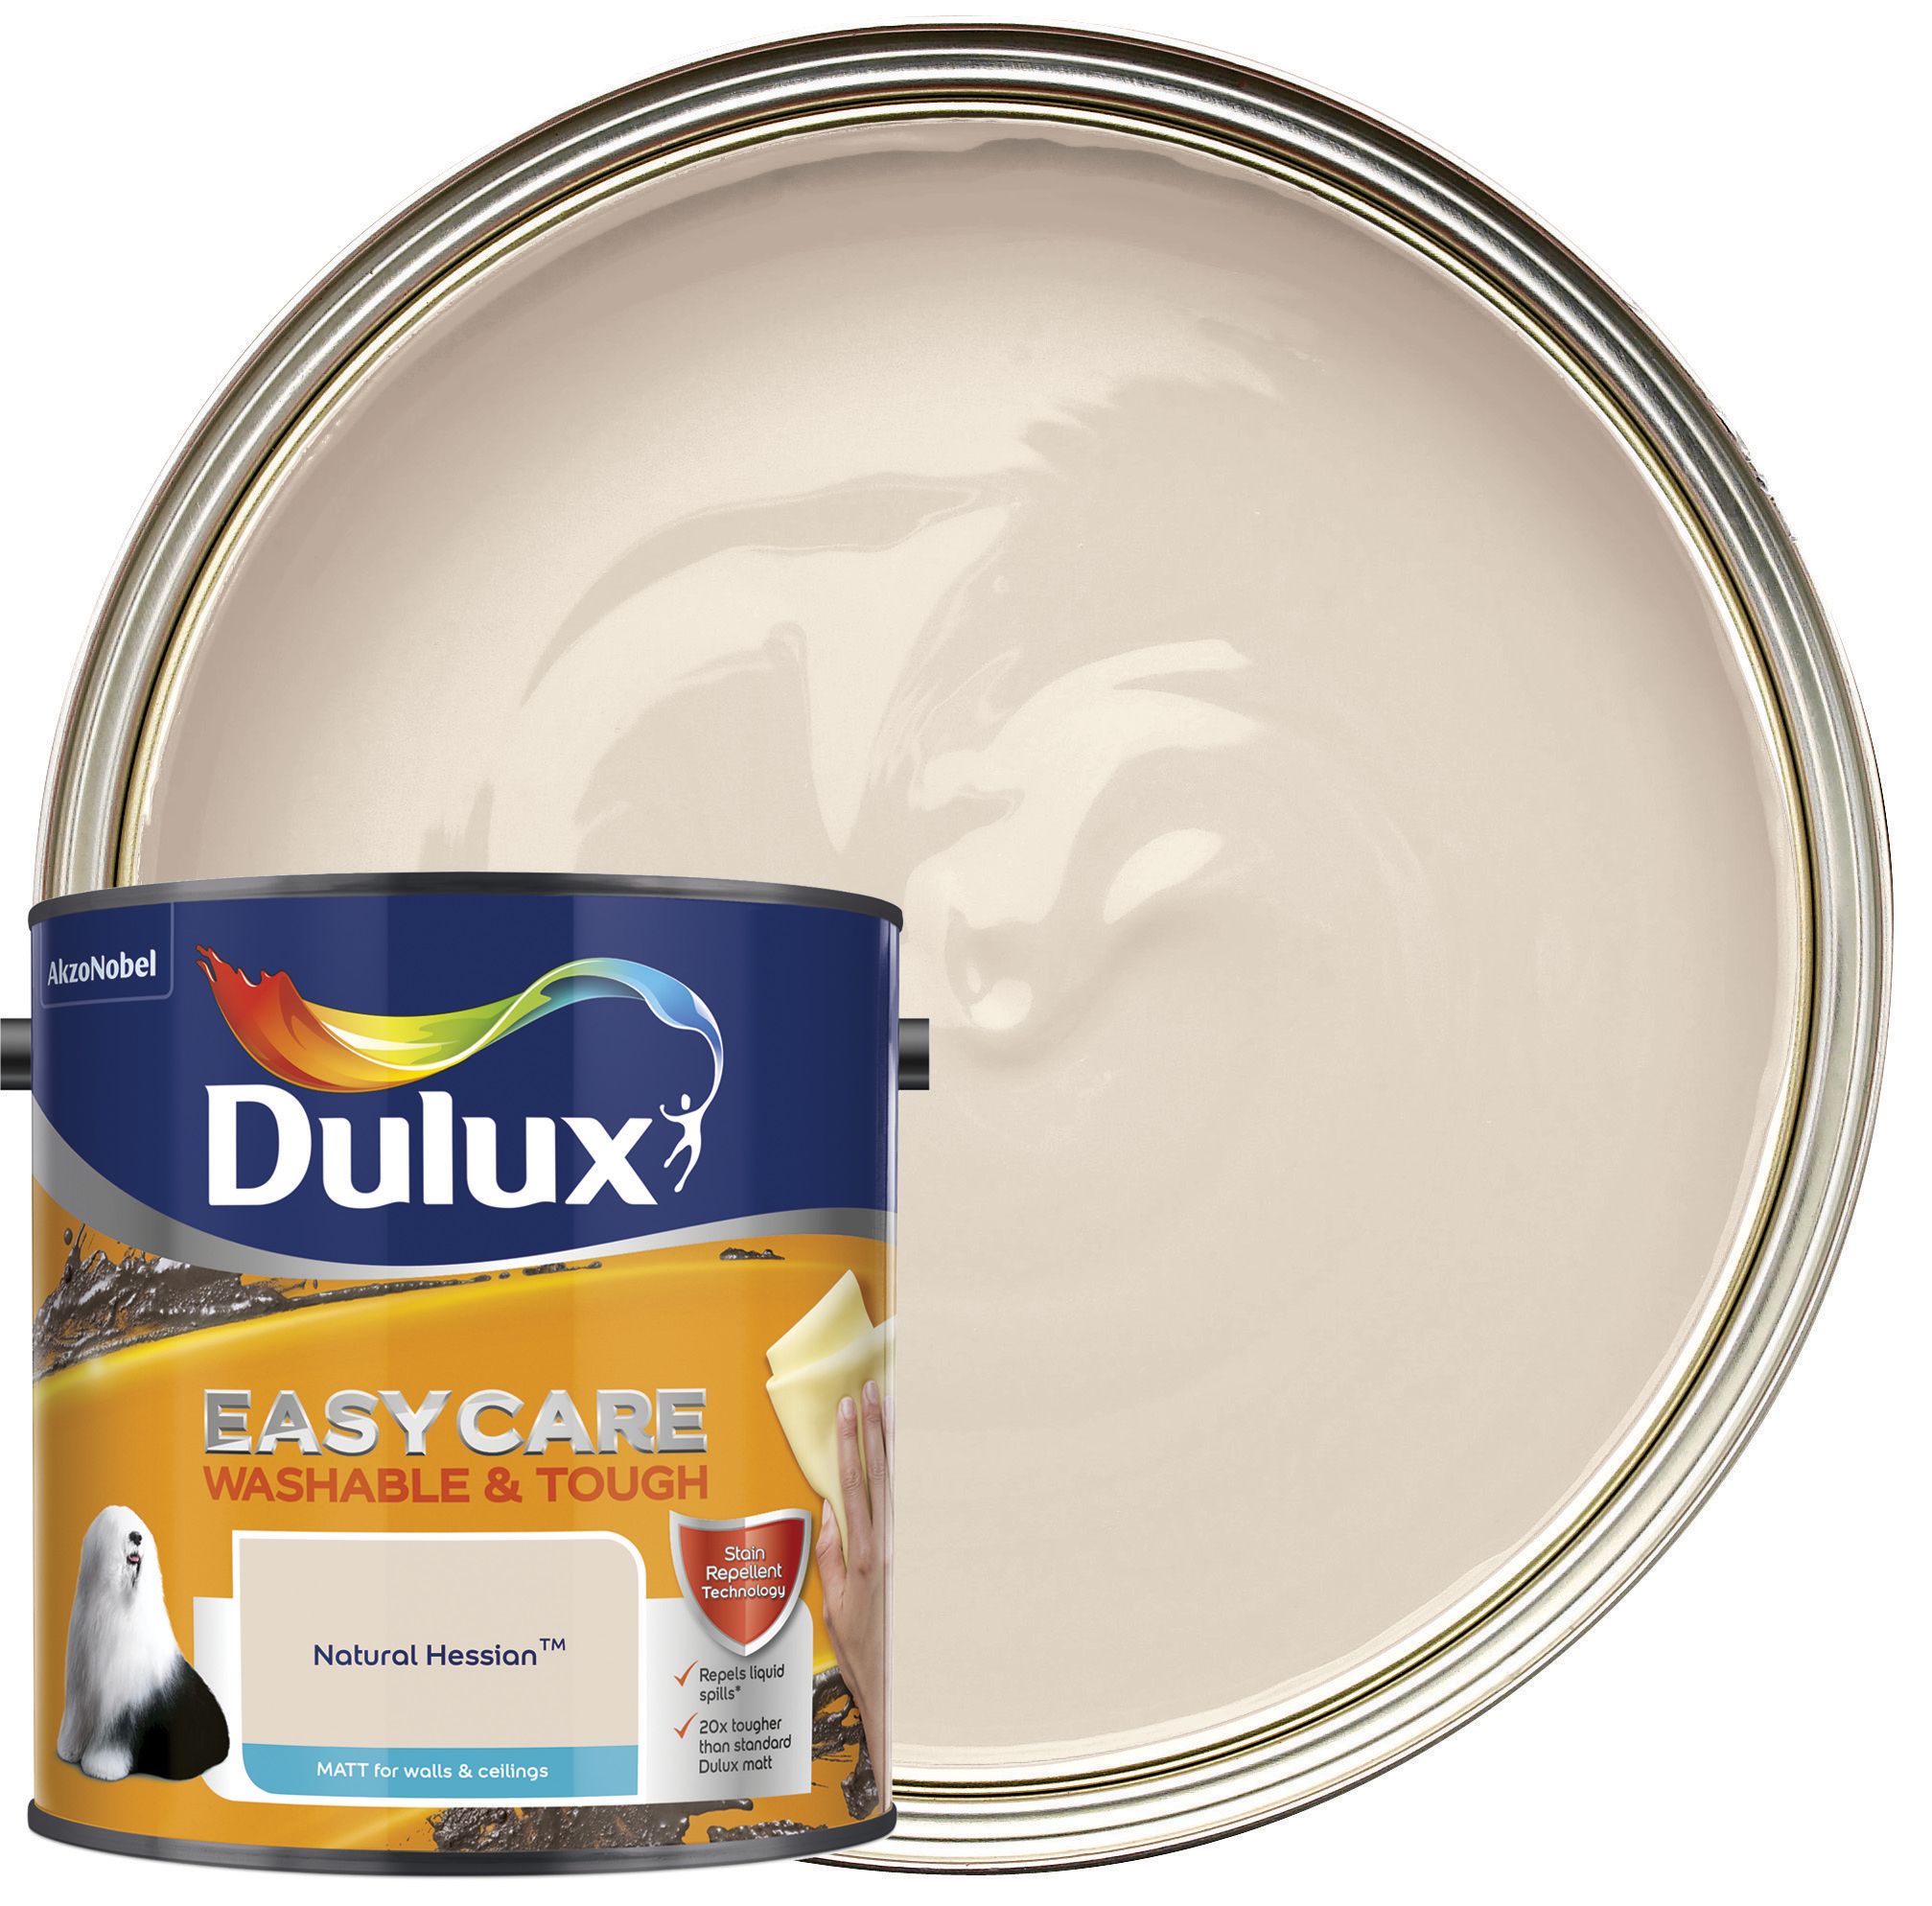 Dulux Easycare Washable & Tough Matt Emulsion Paint - Natural Hessian - 2.5L